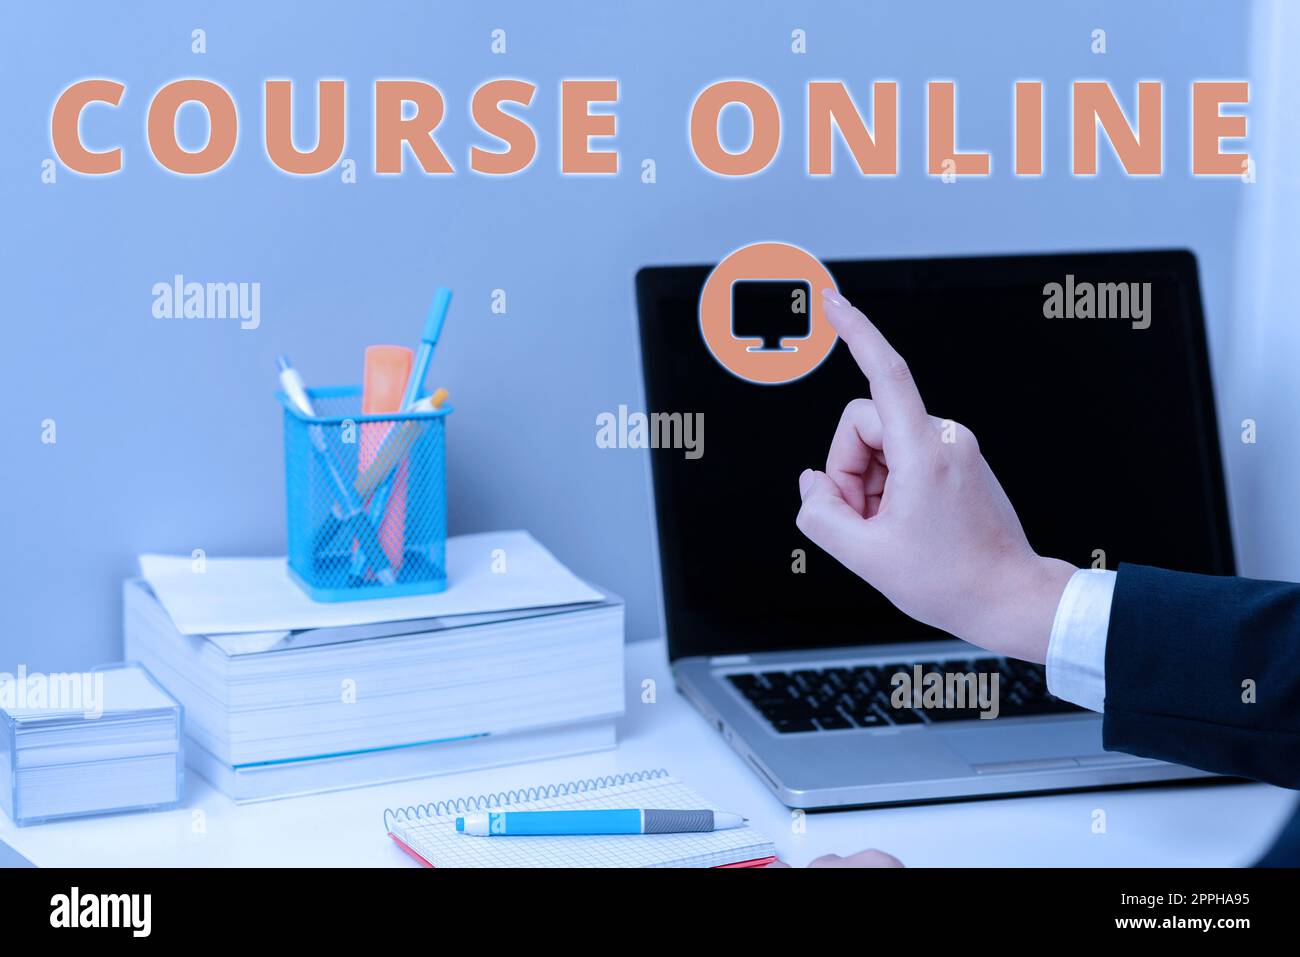 Légende du texte présentant le cours en ligne. Approche commerciale eLearning formation électronique étude à distance classe numérique Banque D'Images